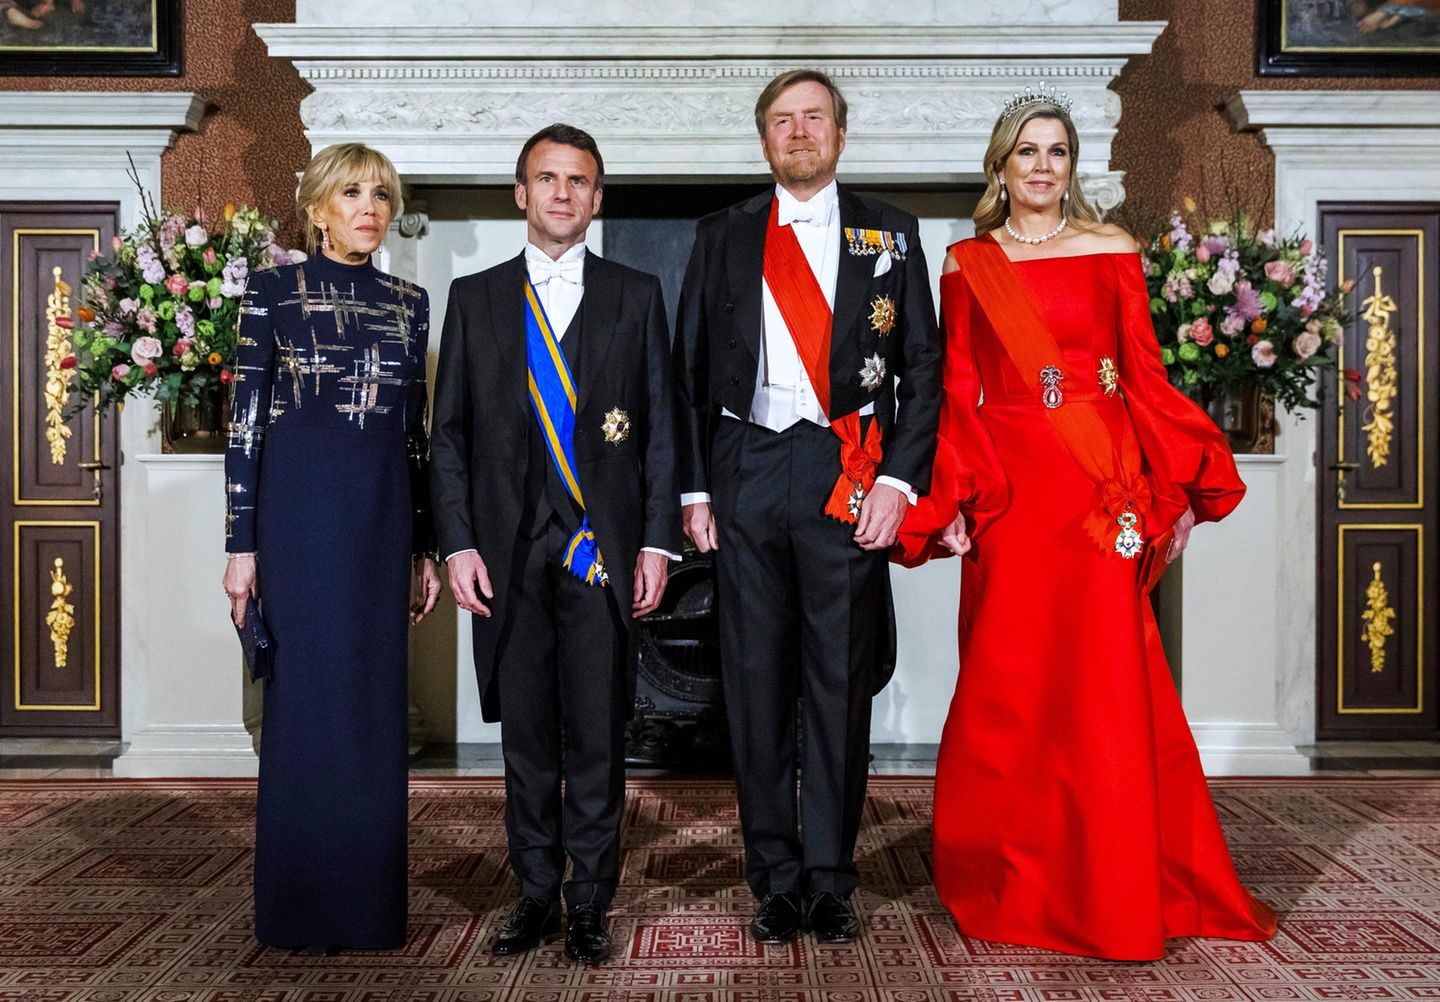 Beim abendlichen Galadinner im Königlichen Palast hat sich besonders Gastgeberin Königin Máxima mit ihrem roten Traumlook von Claes Iversen selbst übertroffen. Etwas zurückhaltender, aber nicht weniger glamourös ist Brigitte Macrons dunkelblaues Abendkleid mit glänzenden Pailletten-Details.